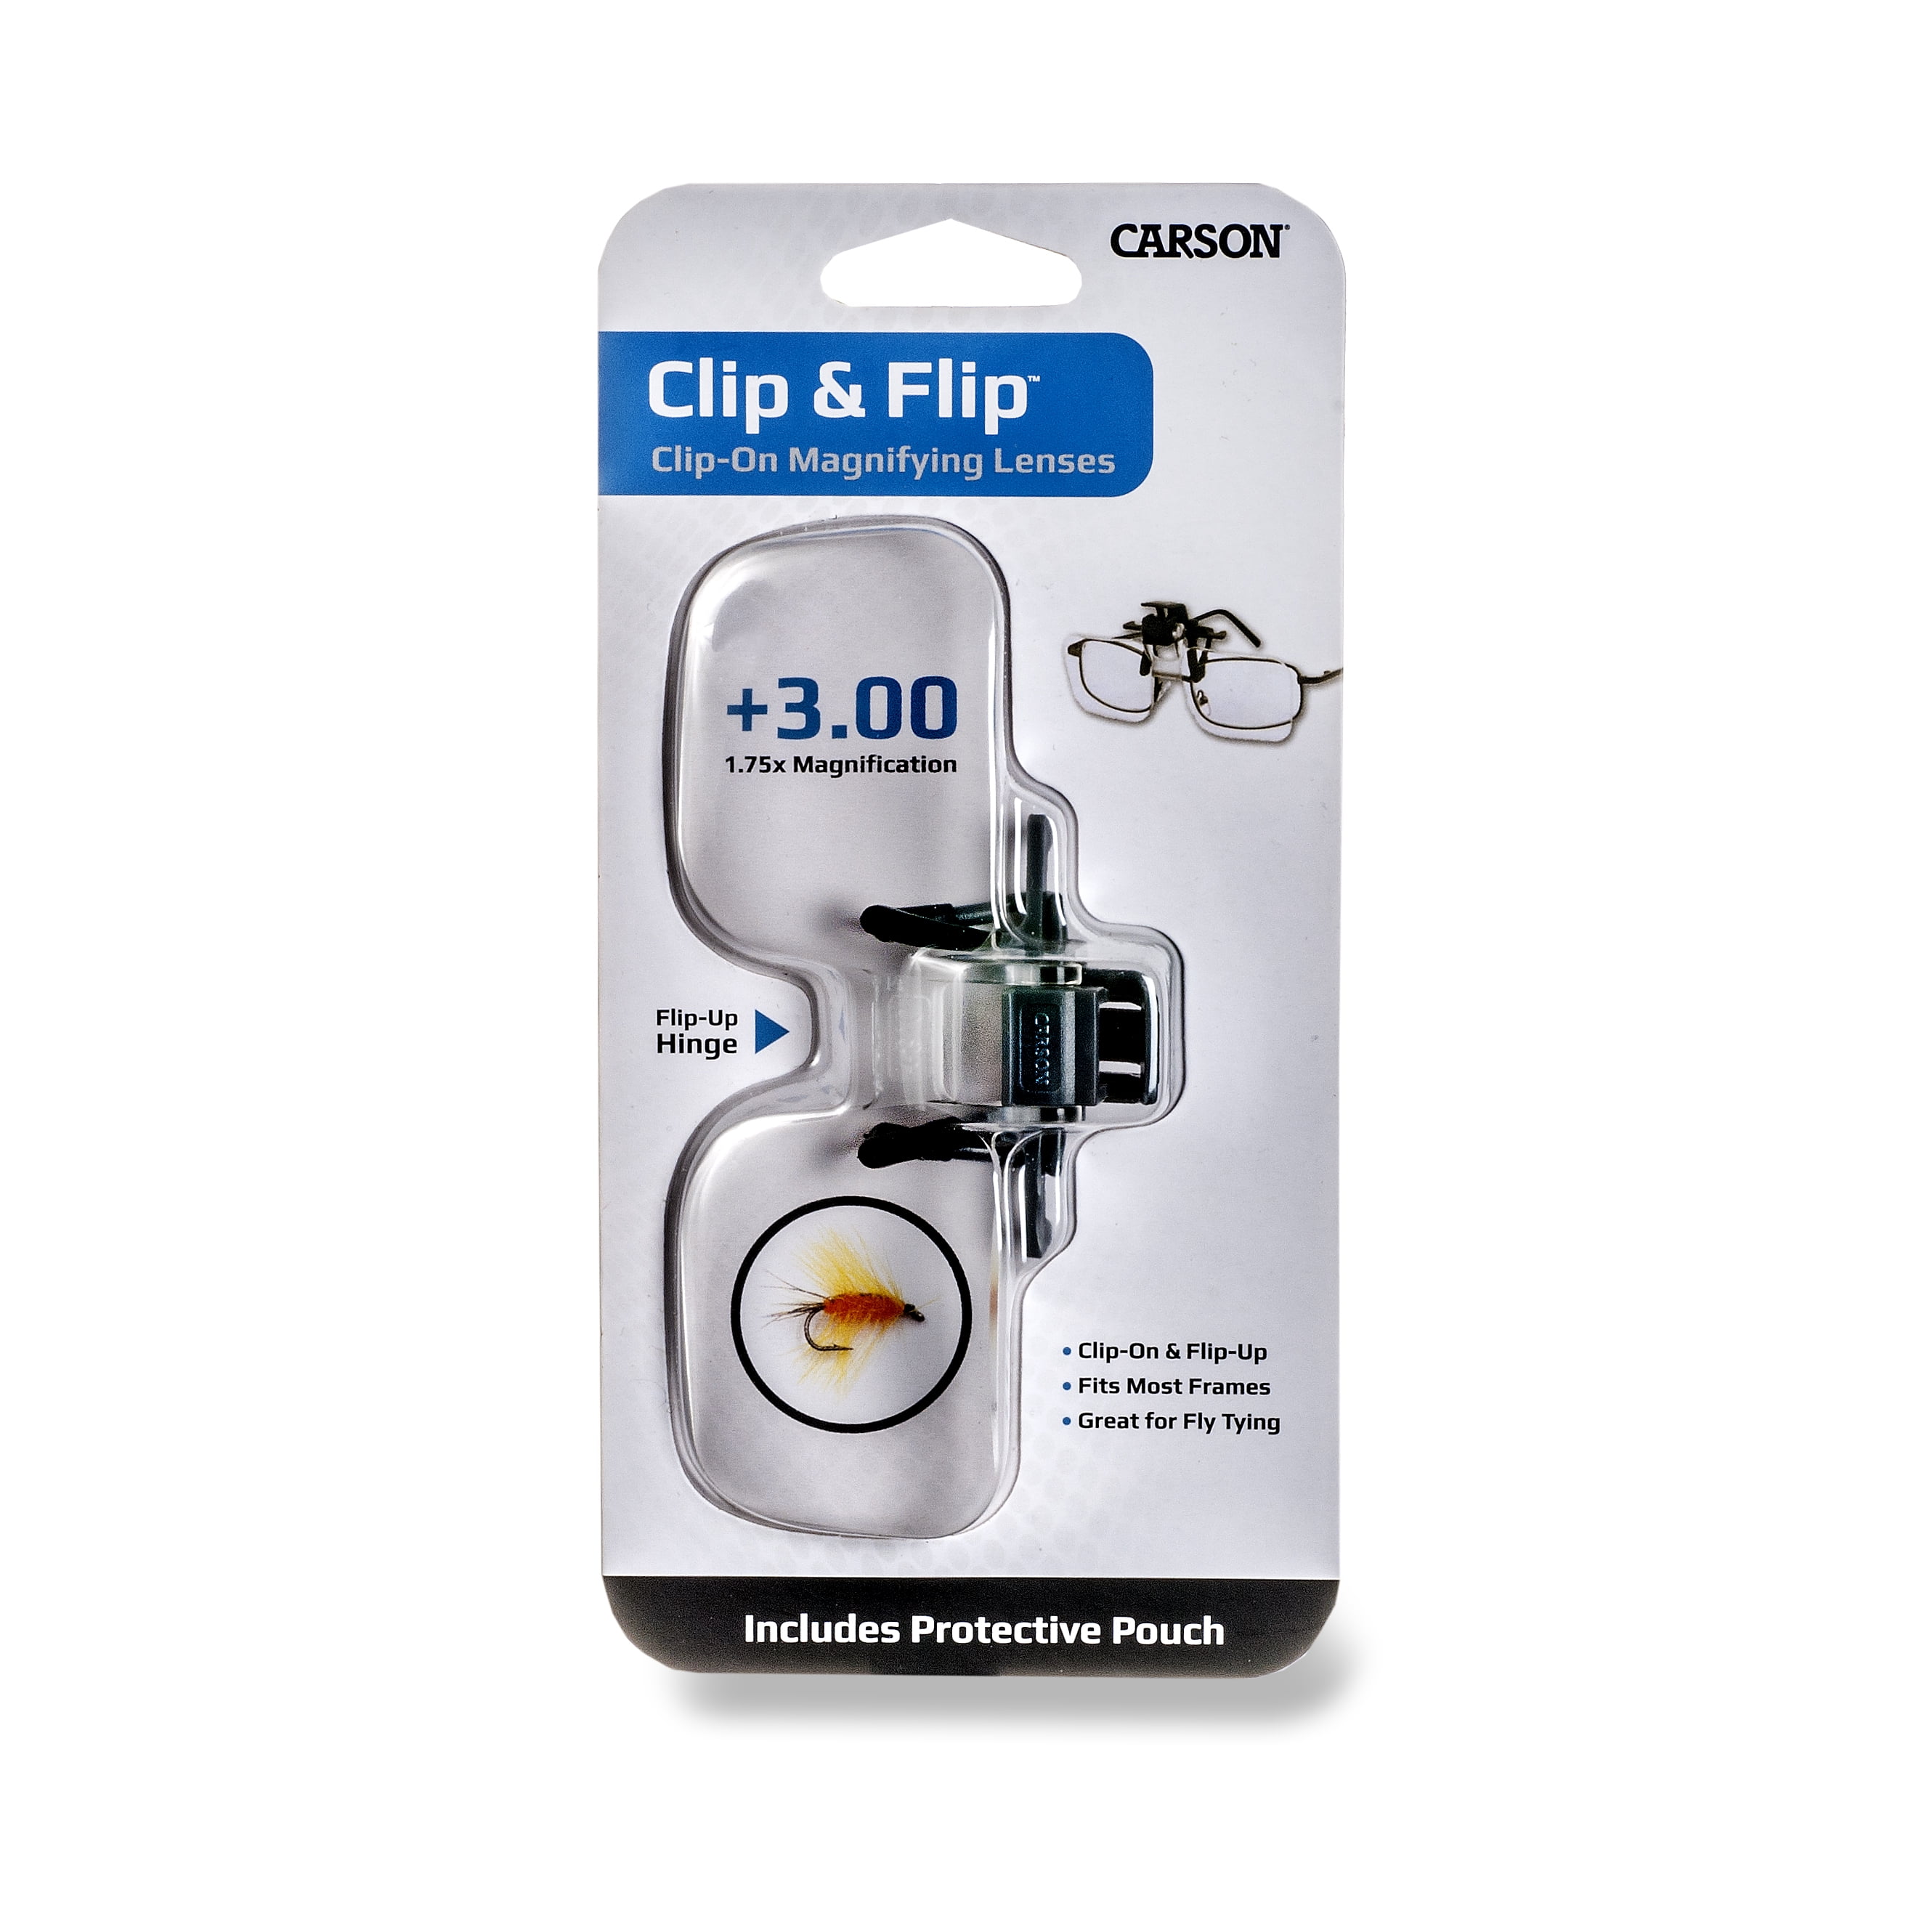 Flip clip